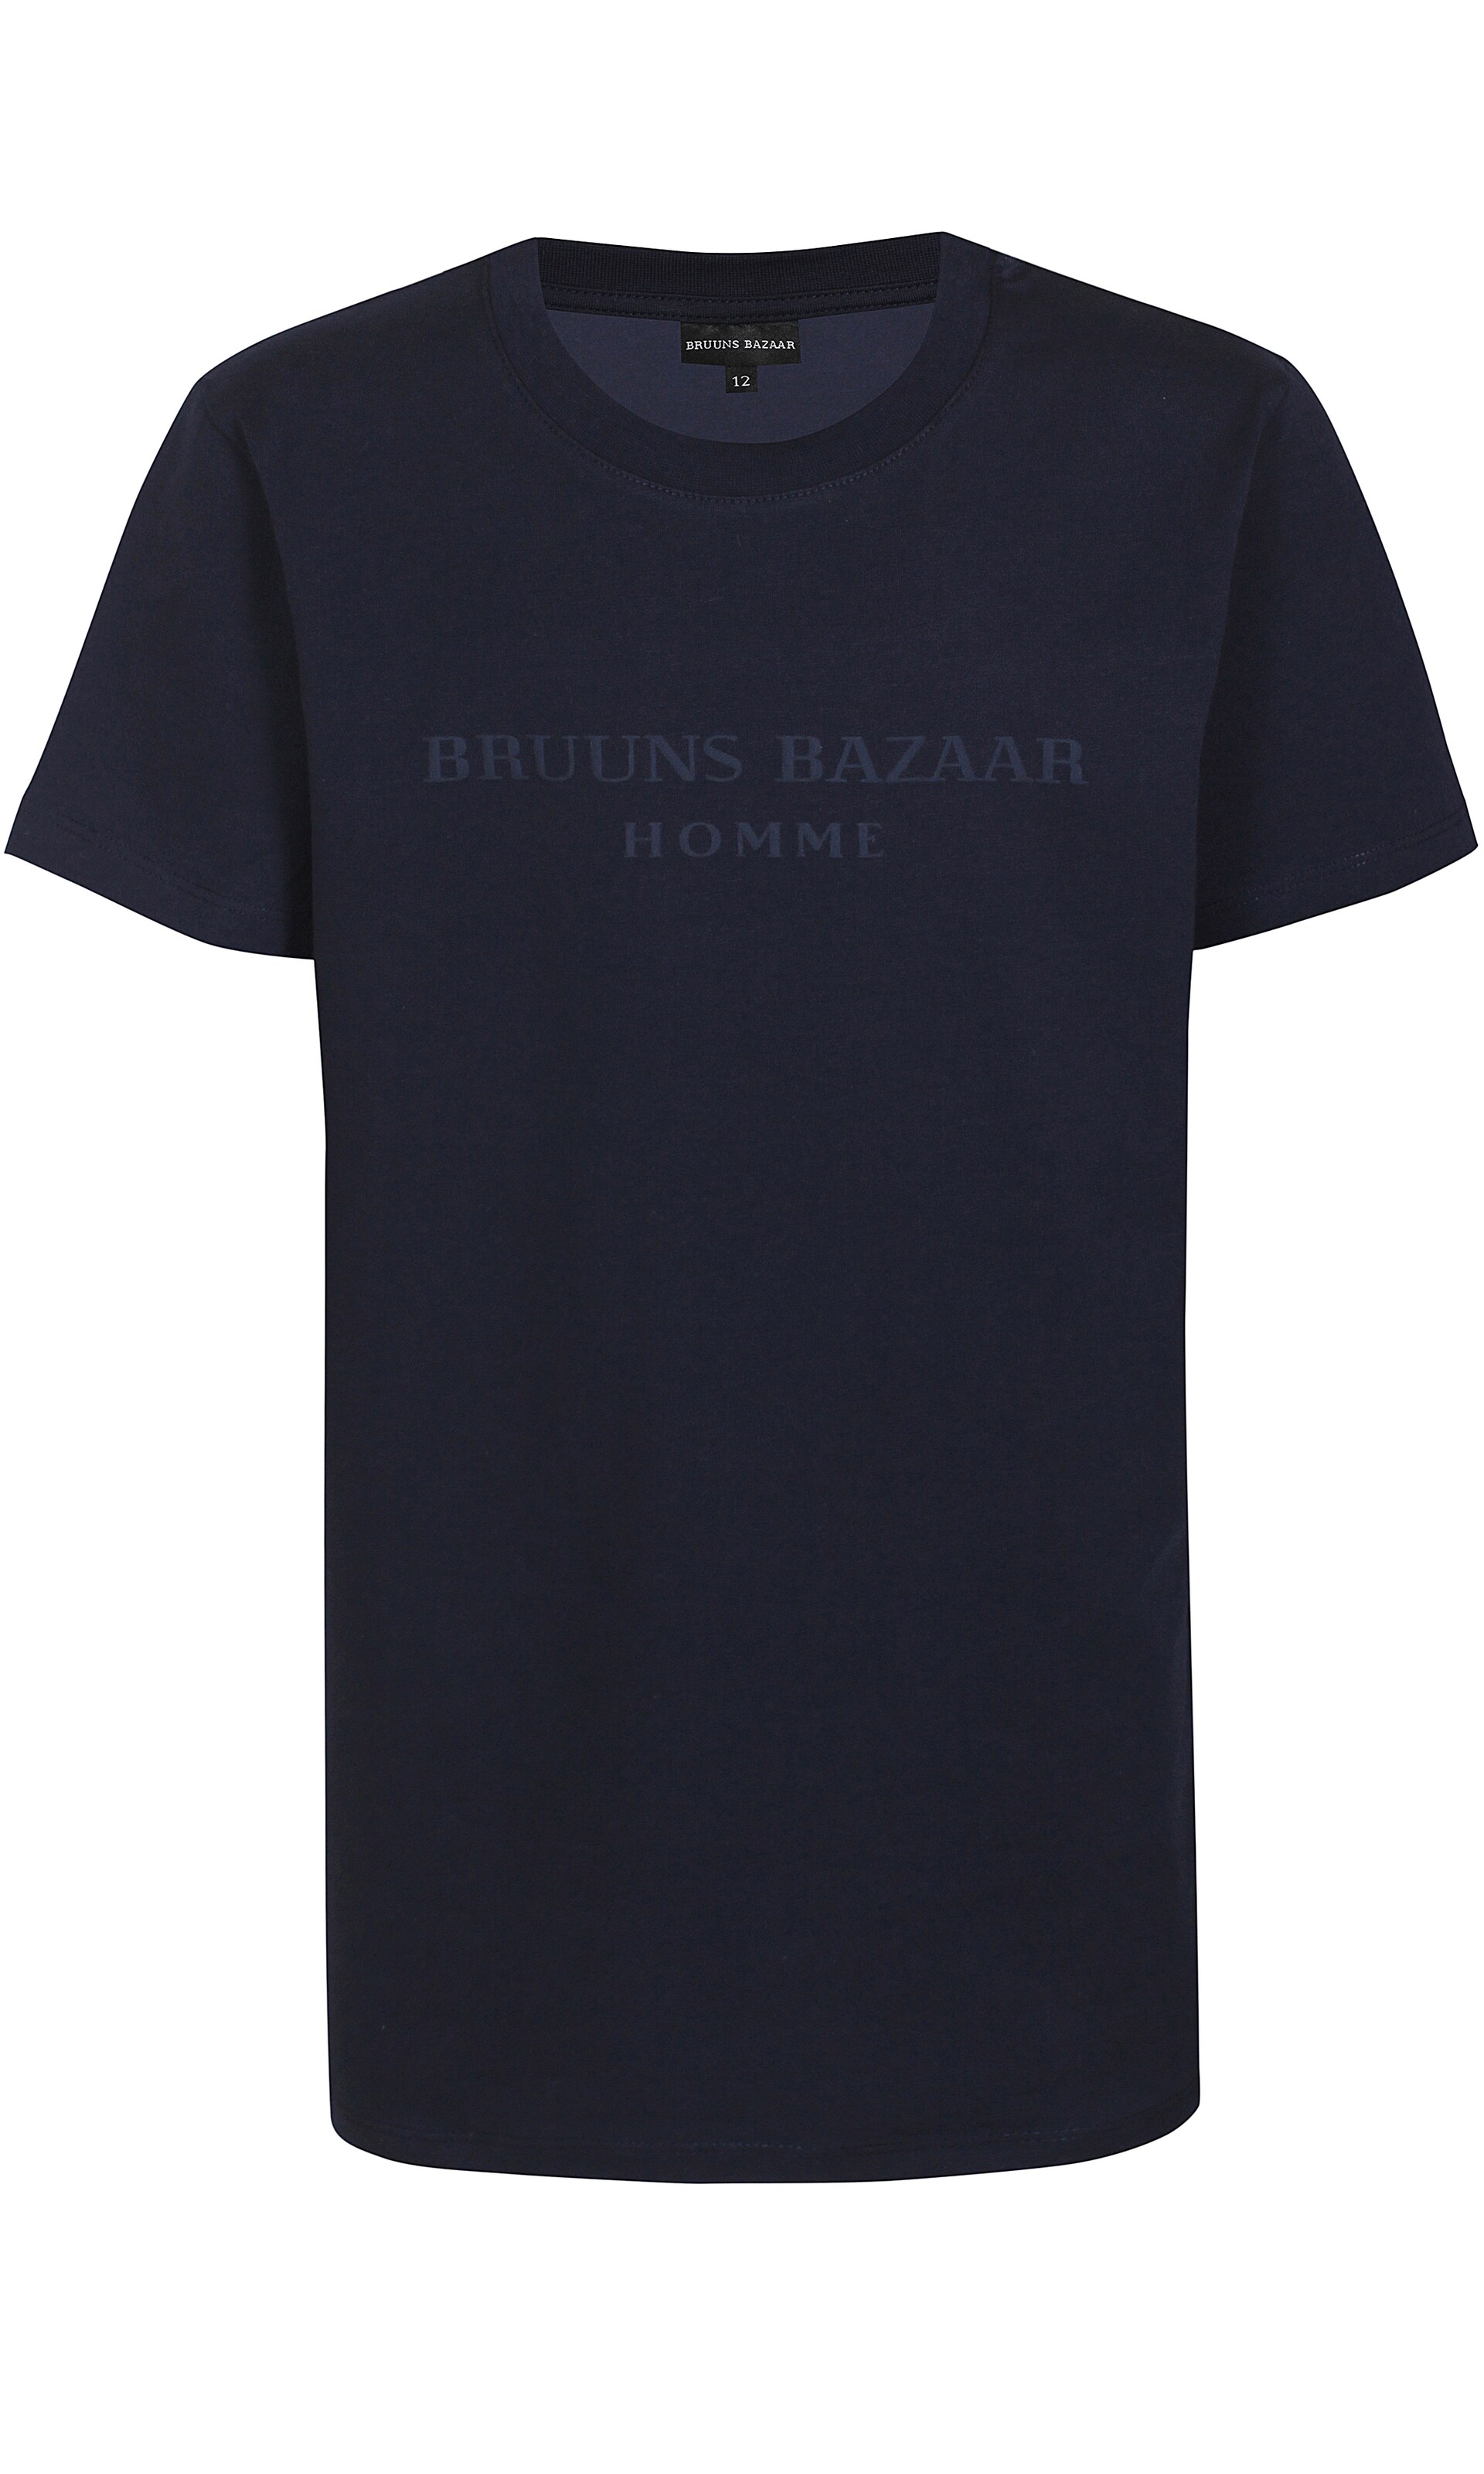 Bruuns Bazaar Kids T-Shirt 128 Bleu